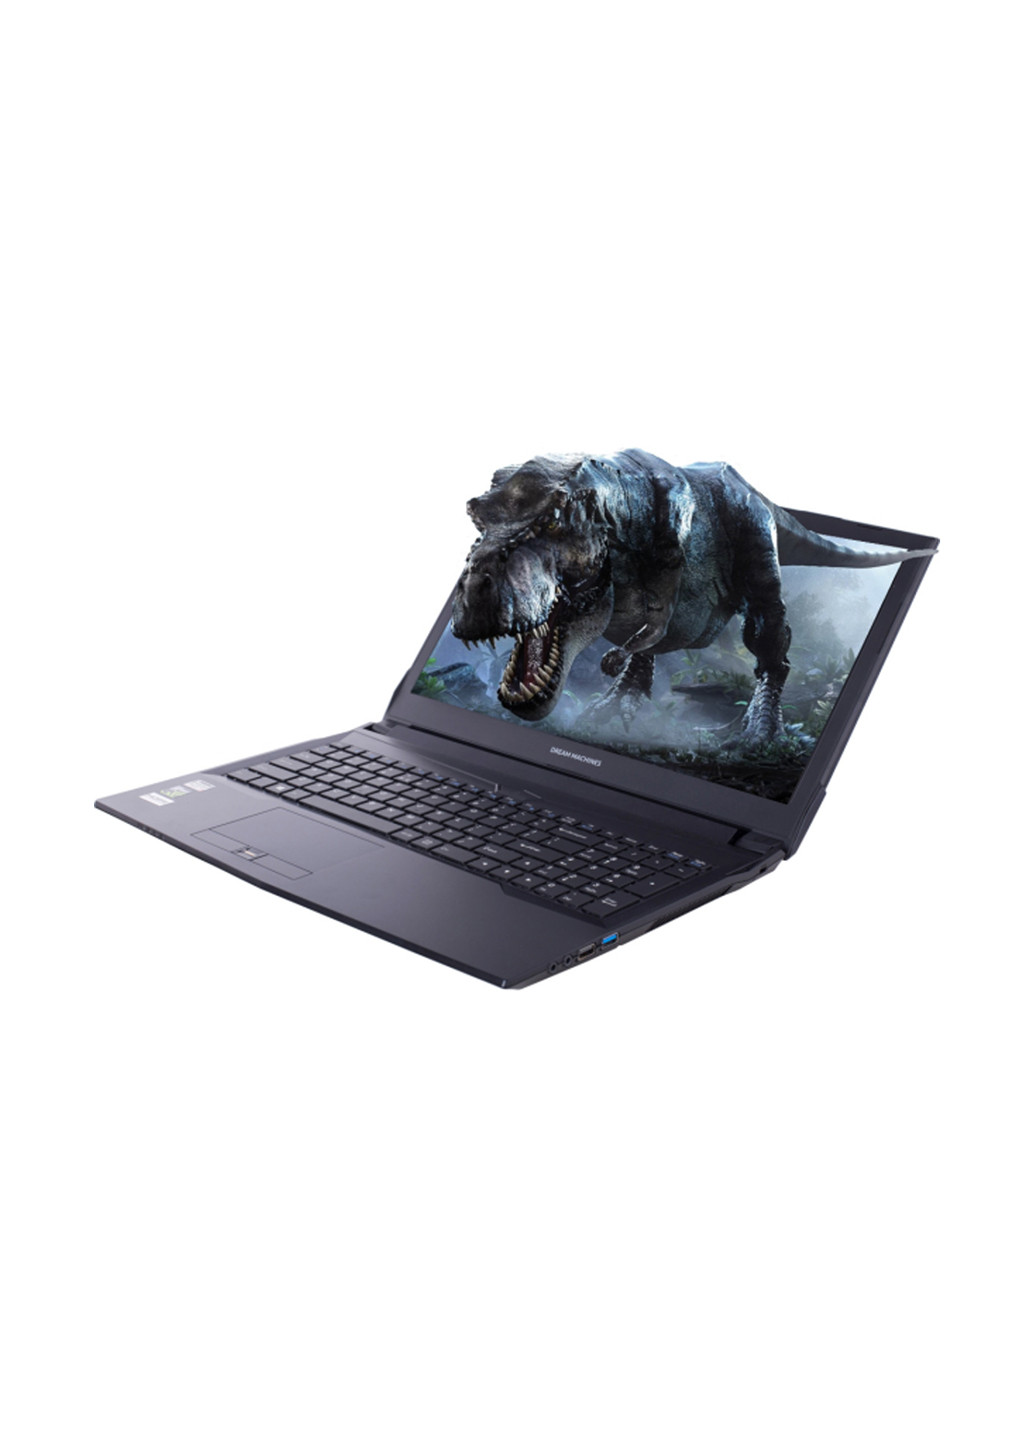 Ноутбук G1050-15 Clevo (G1050-15UA48) Black Dream Machines clevo g1050-15 (g1050-15ua48) black (136402611)